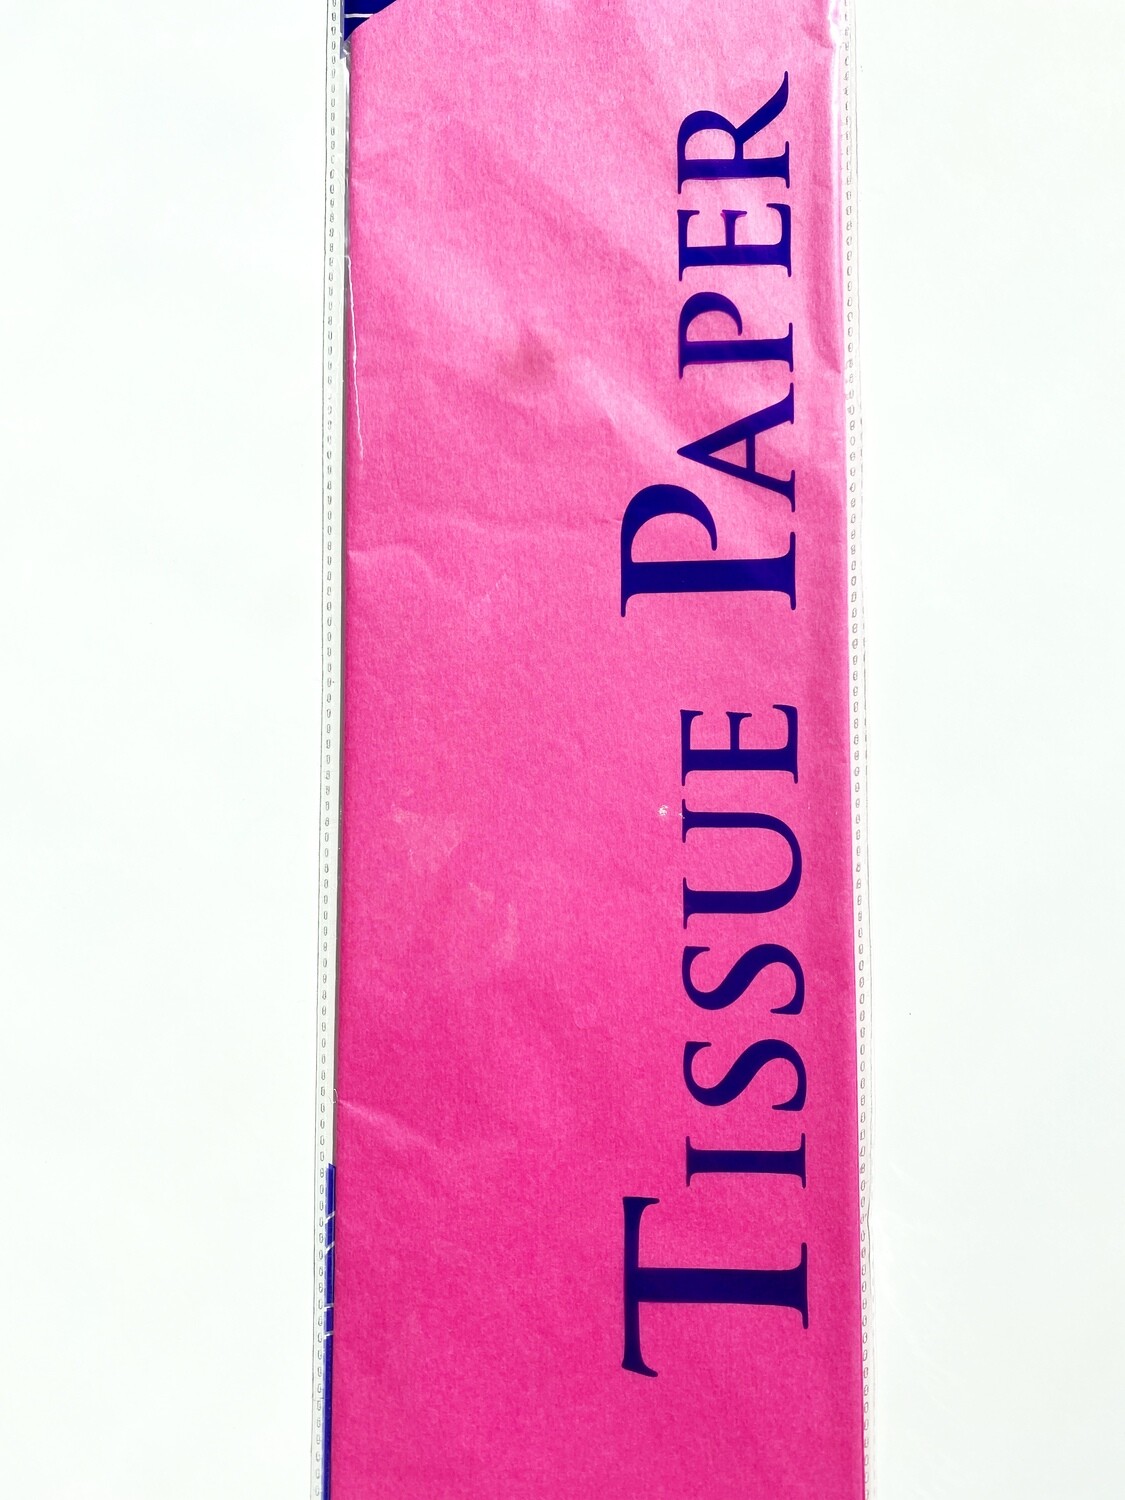 Dark Pink Tissue Paper